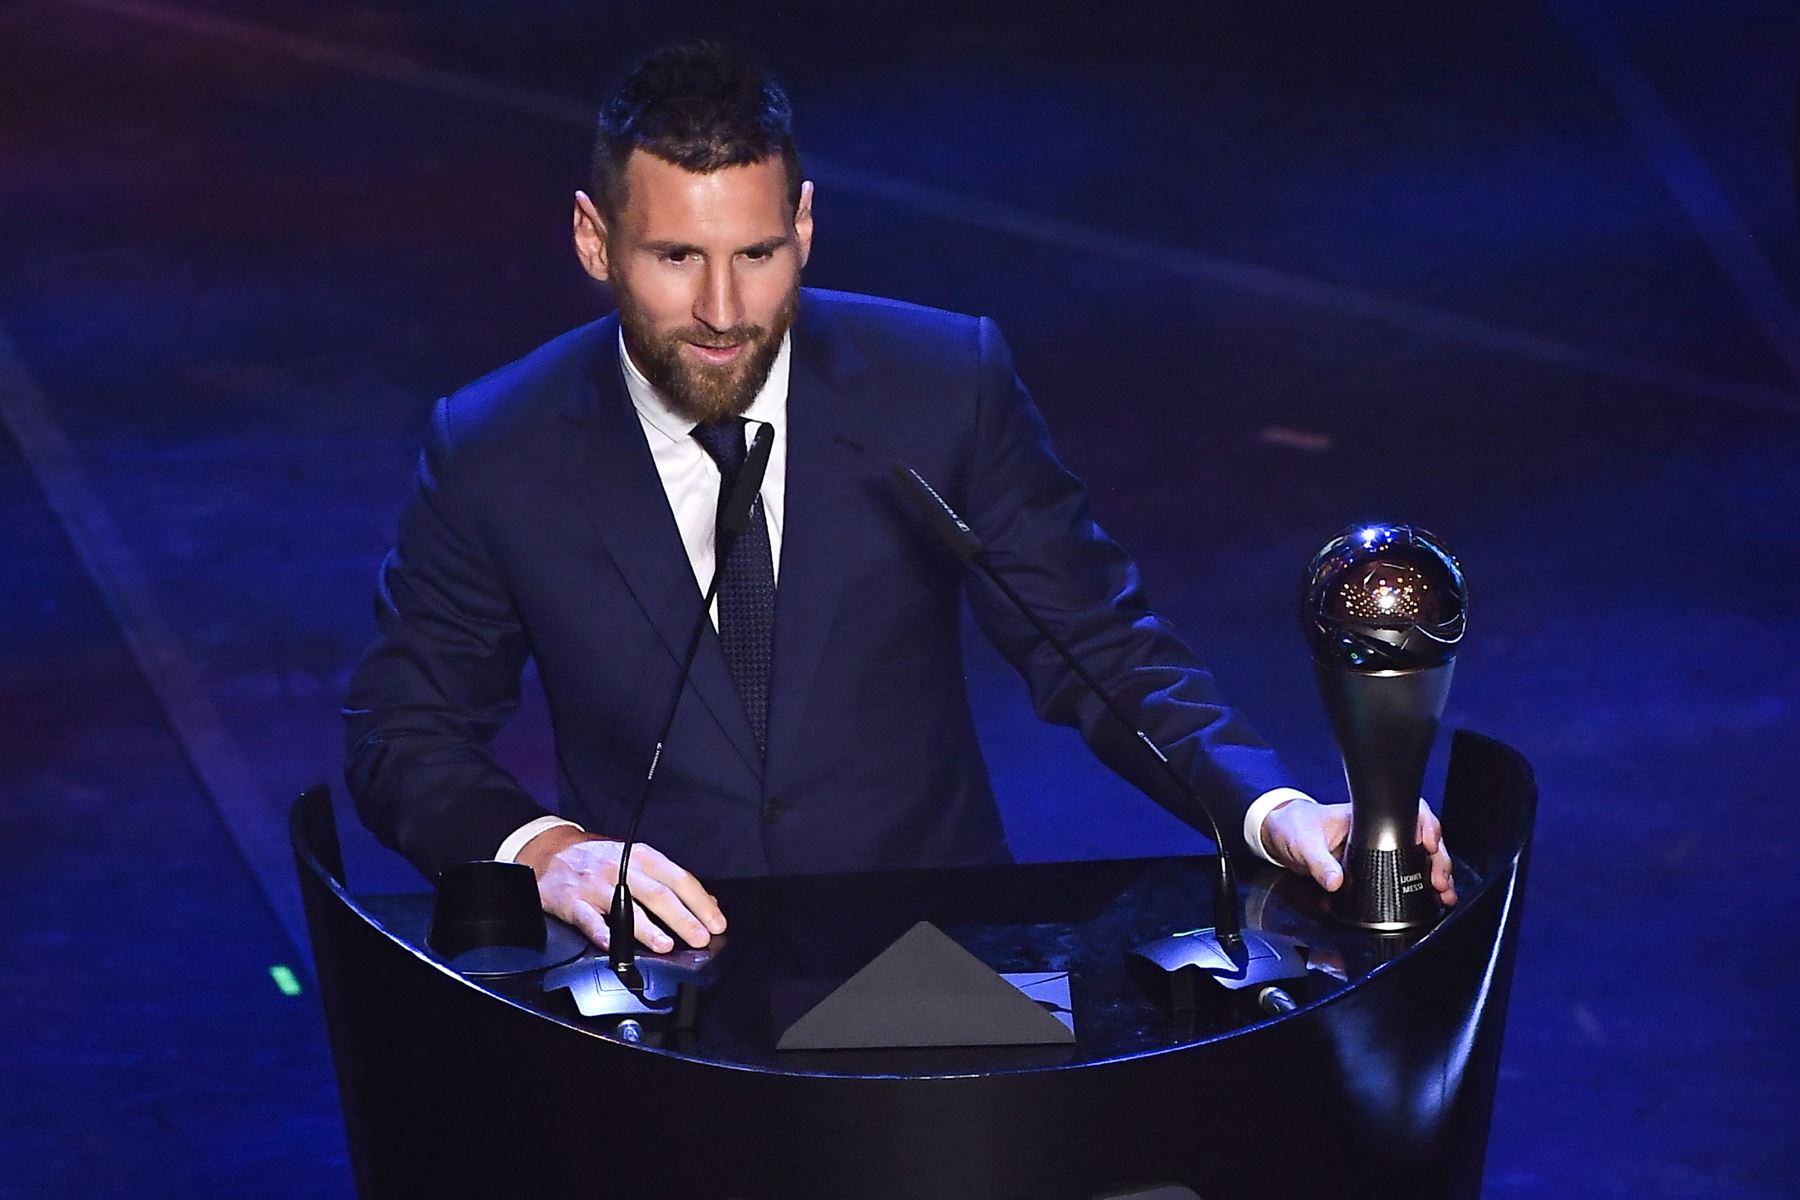 El alero argentino y barcelonés Lionel Messi habla después de ganar el trofeo al Premio al Mejor Jugador Masculino de la FIFA de 2019.
Foto: AFP